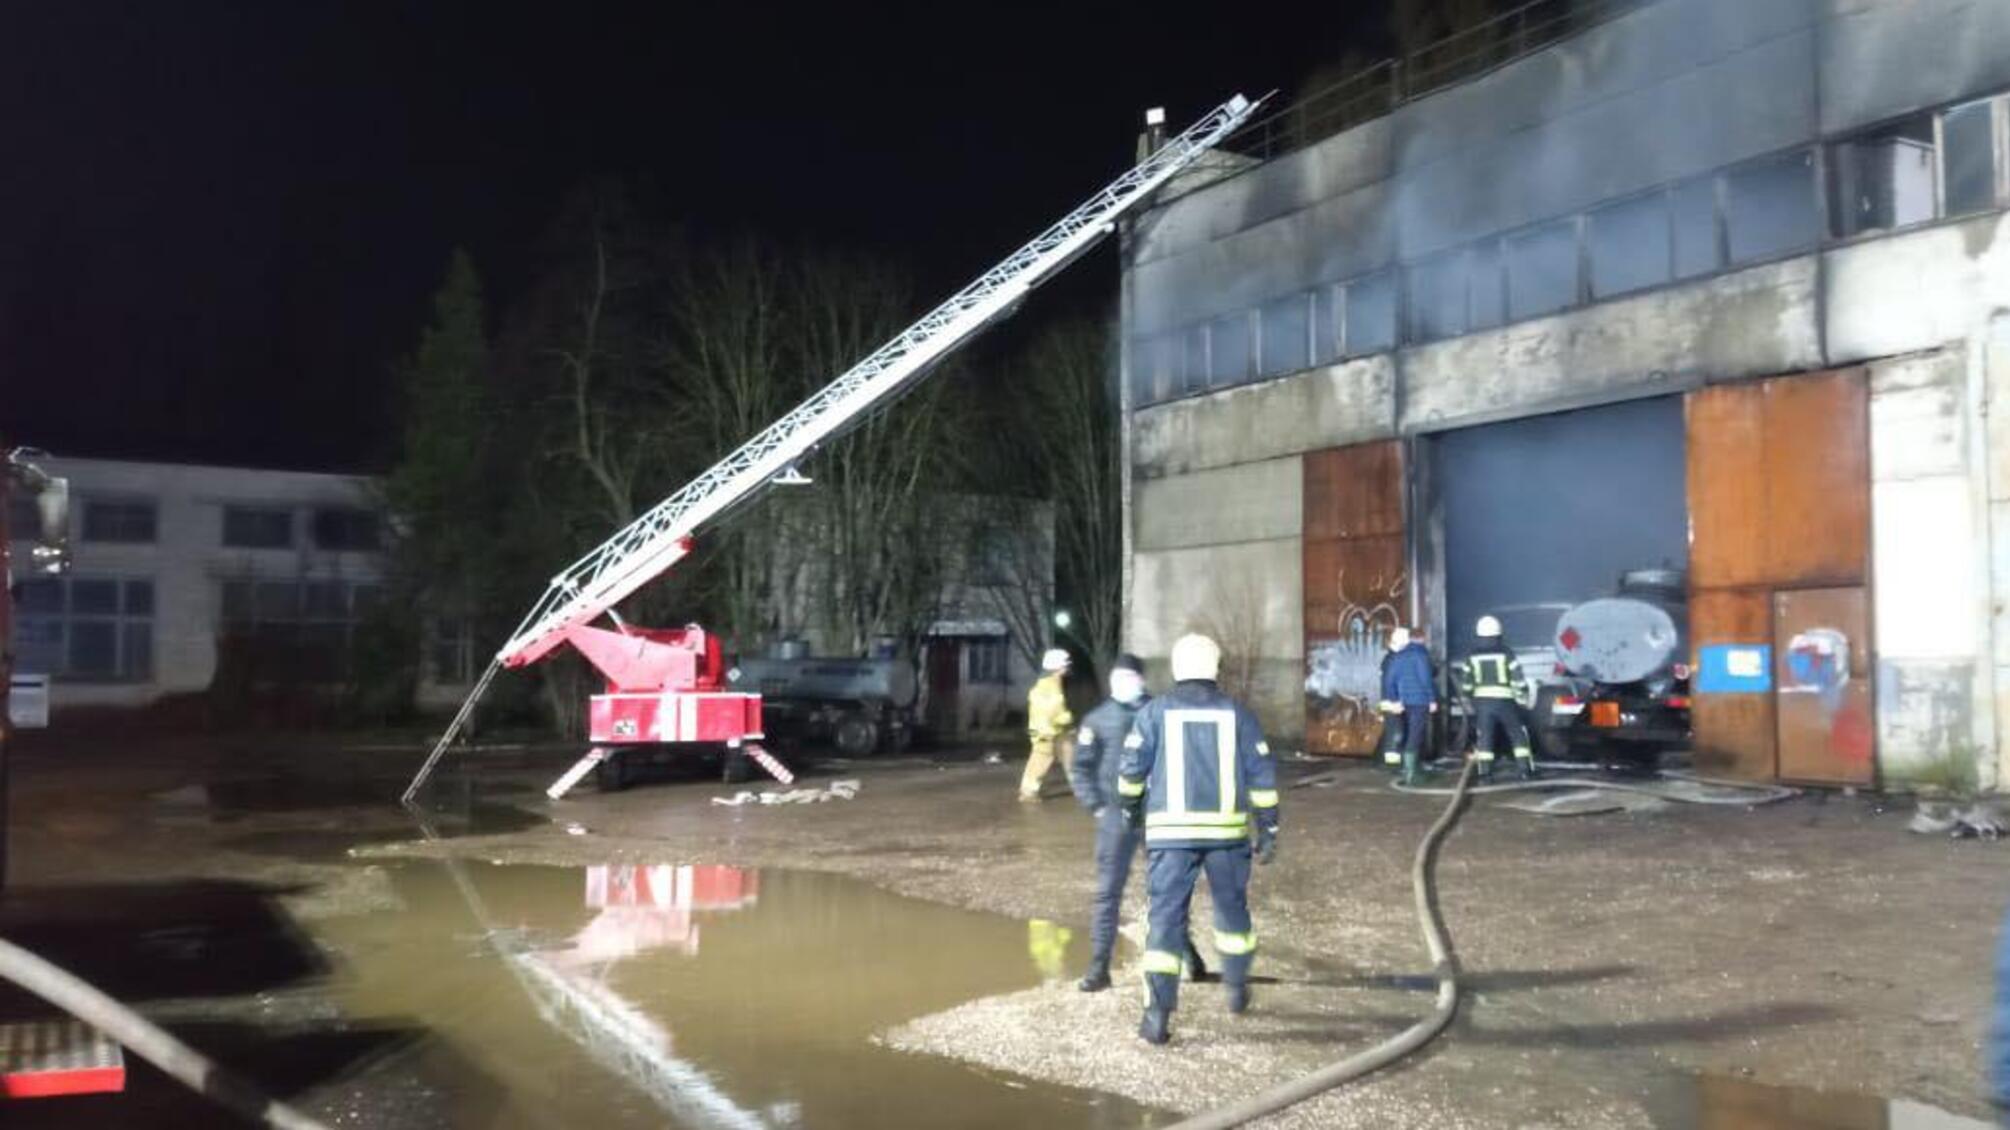 Херсонська область: вогнеборці ліквідували пожежу в автомобільному боксі, який знаходився біля газової заправки